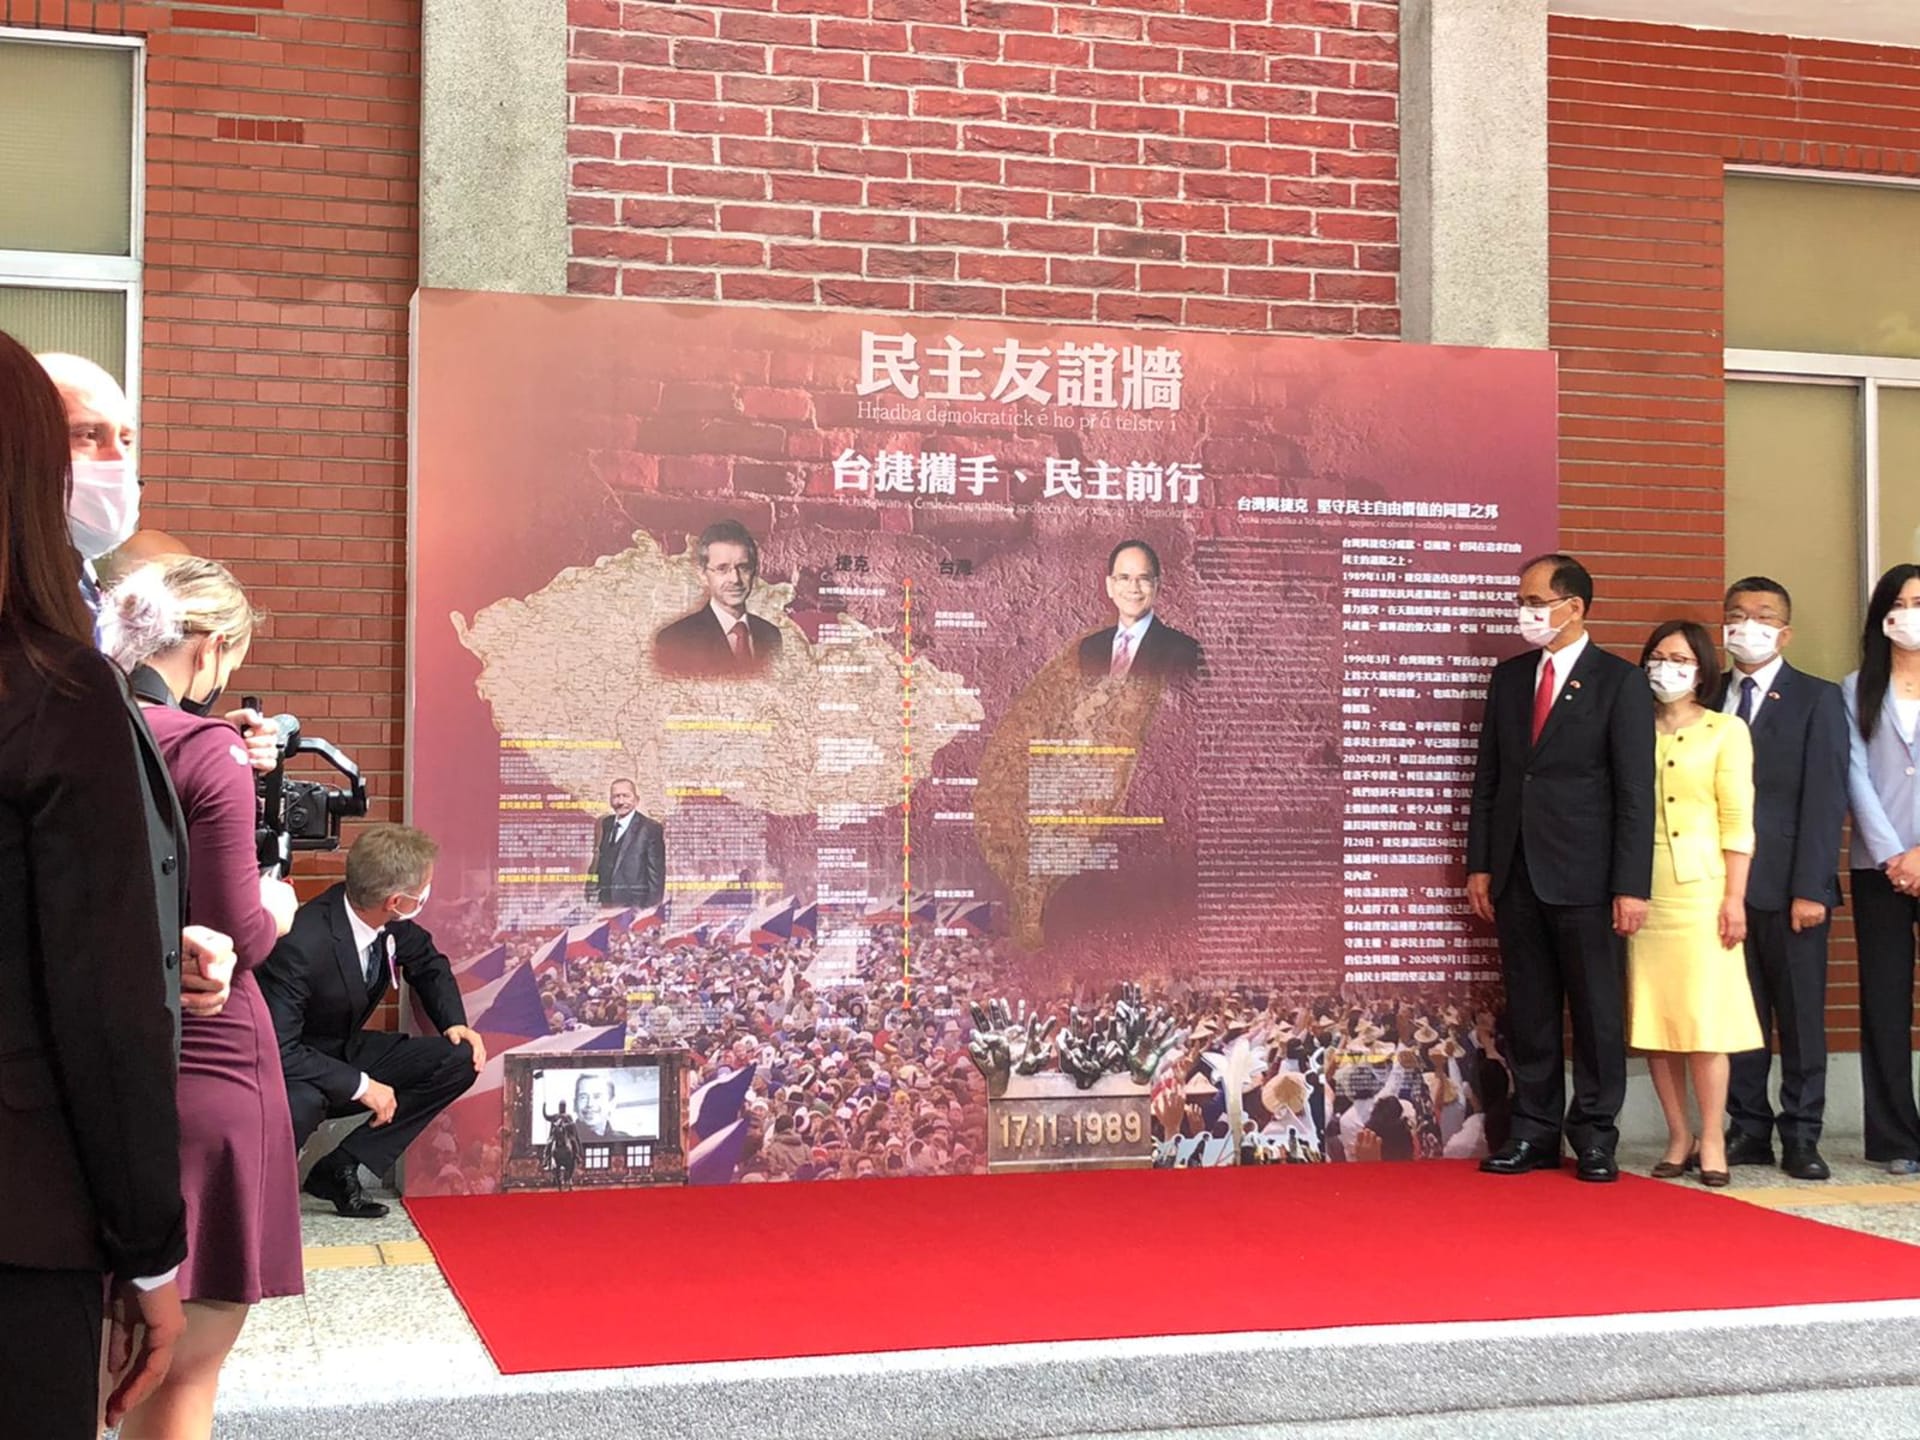 Návštěva předsedy Senátu Miloše Vystrčila na Tchaj-wanu